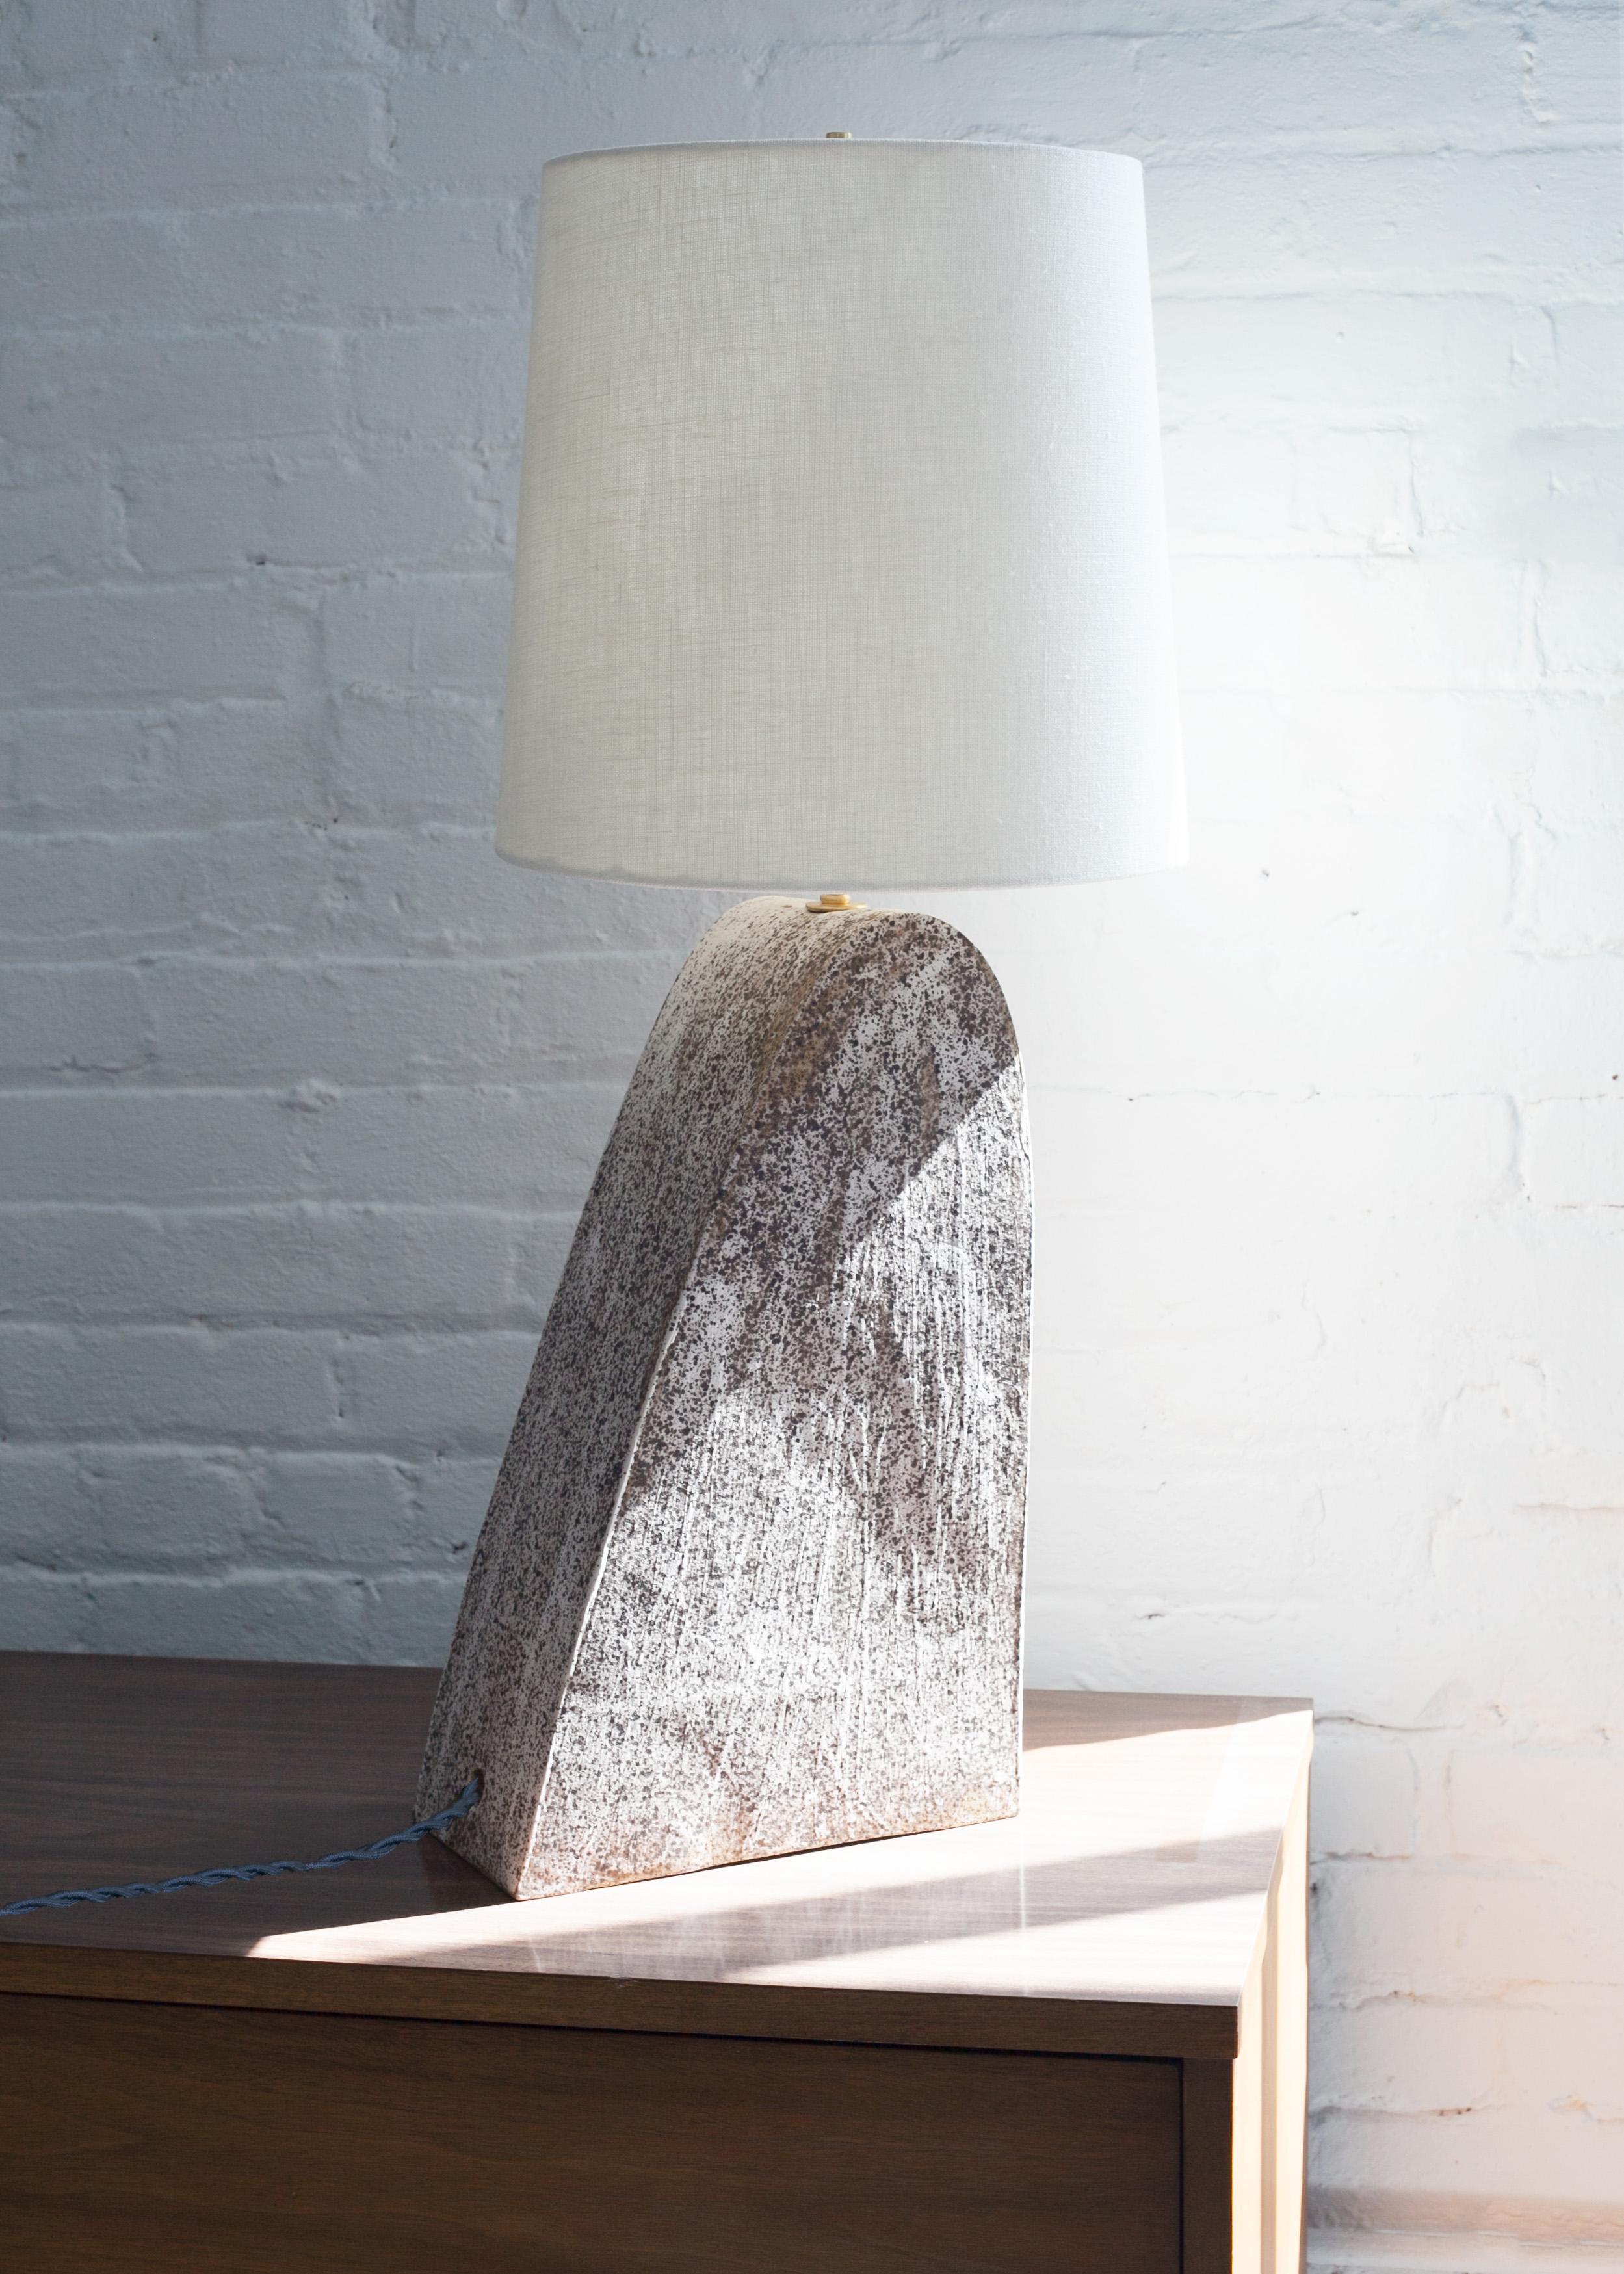 Einzigartige Keramiklampe, einzigartig und handgefertigt. Der Lampenfuß besteht aus gesprenkeltem Steinzeugton mit mattweißer Glasur. Dieses Stück wurde von Muscheln und glatten Steinen inspiriert, die auf Reisen nach Neuengland am Strand gesammelt